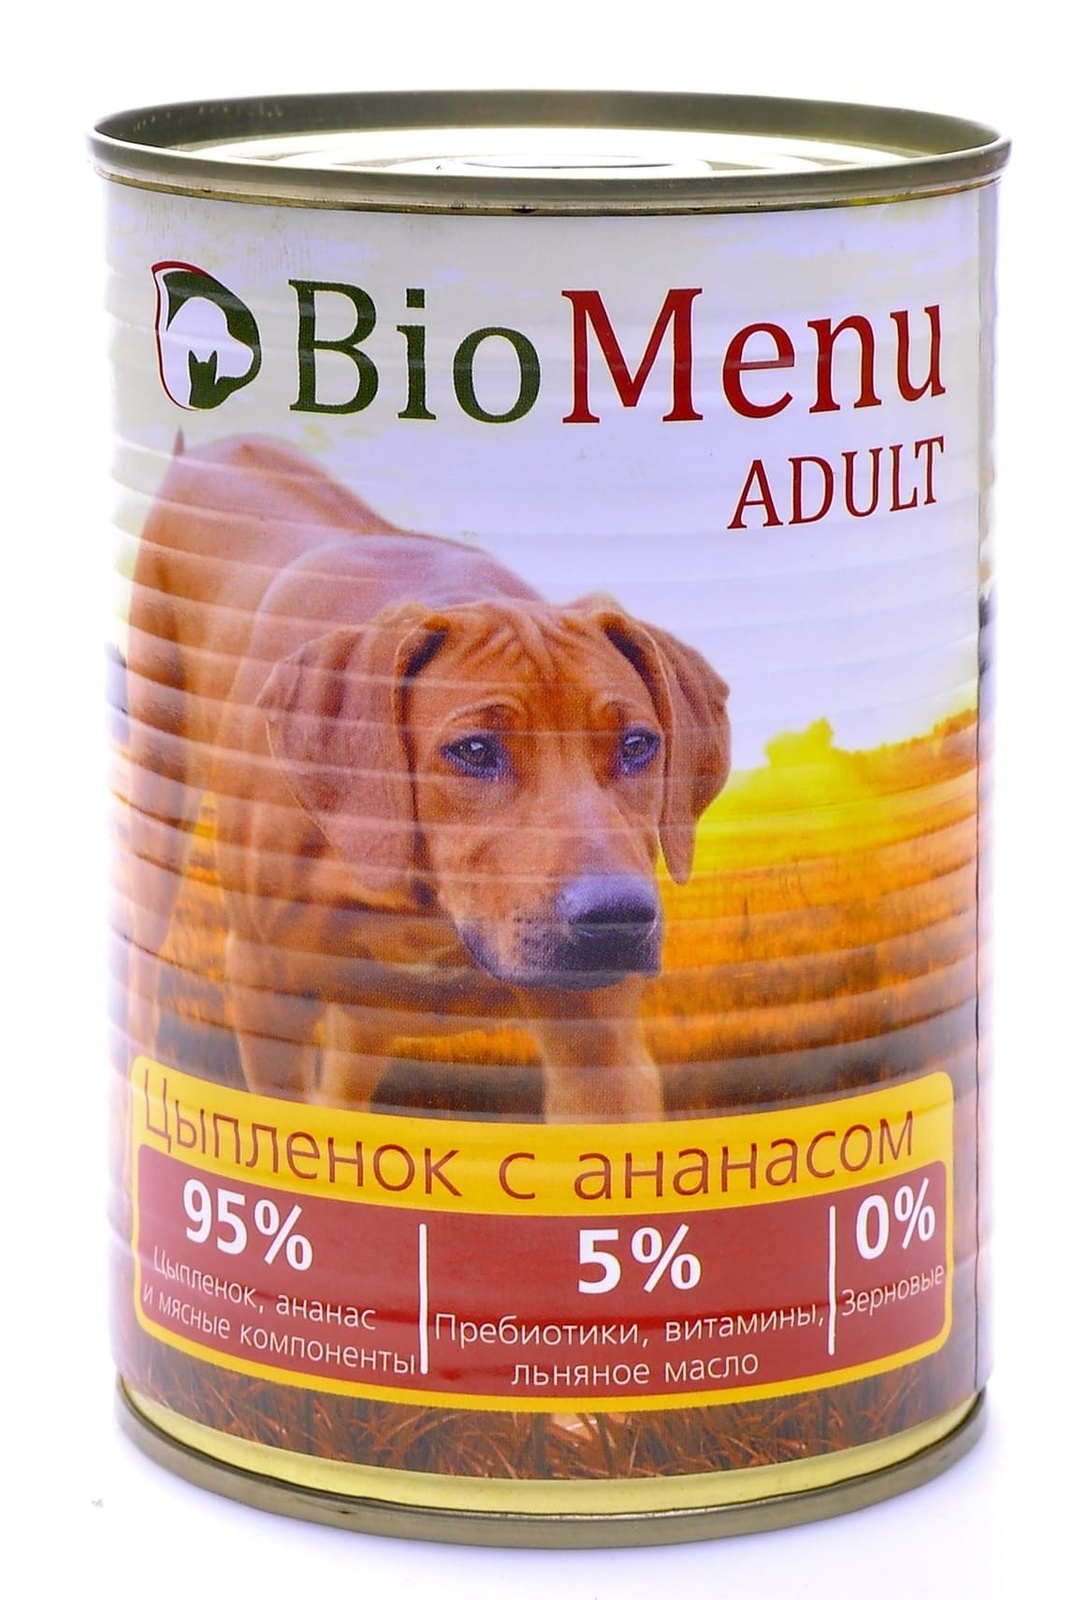 BioMenu BioMenu консервы для собак цыпленок с ананасом (100 г) biomenu biomenu консервы для щенков индейка 100 г